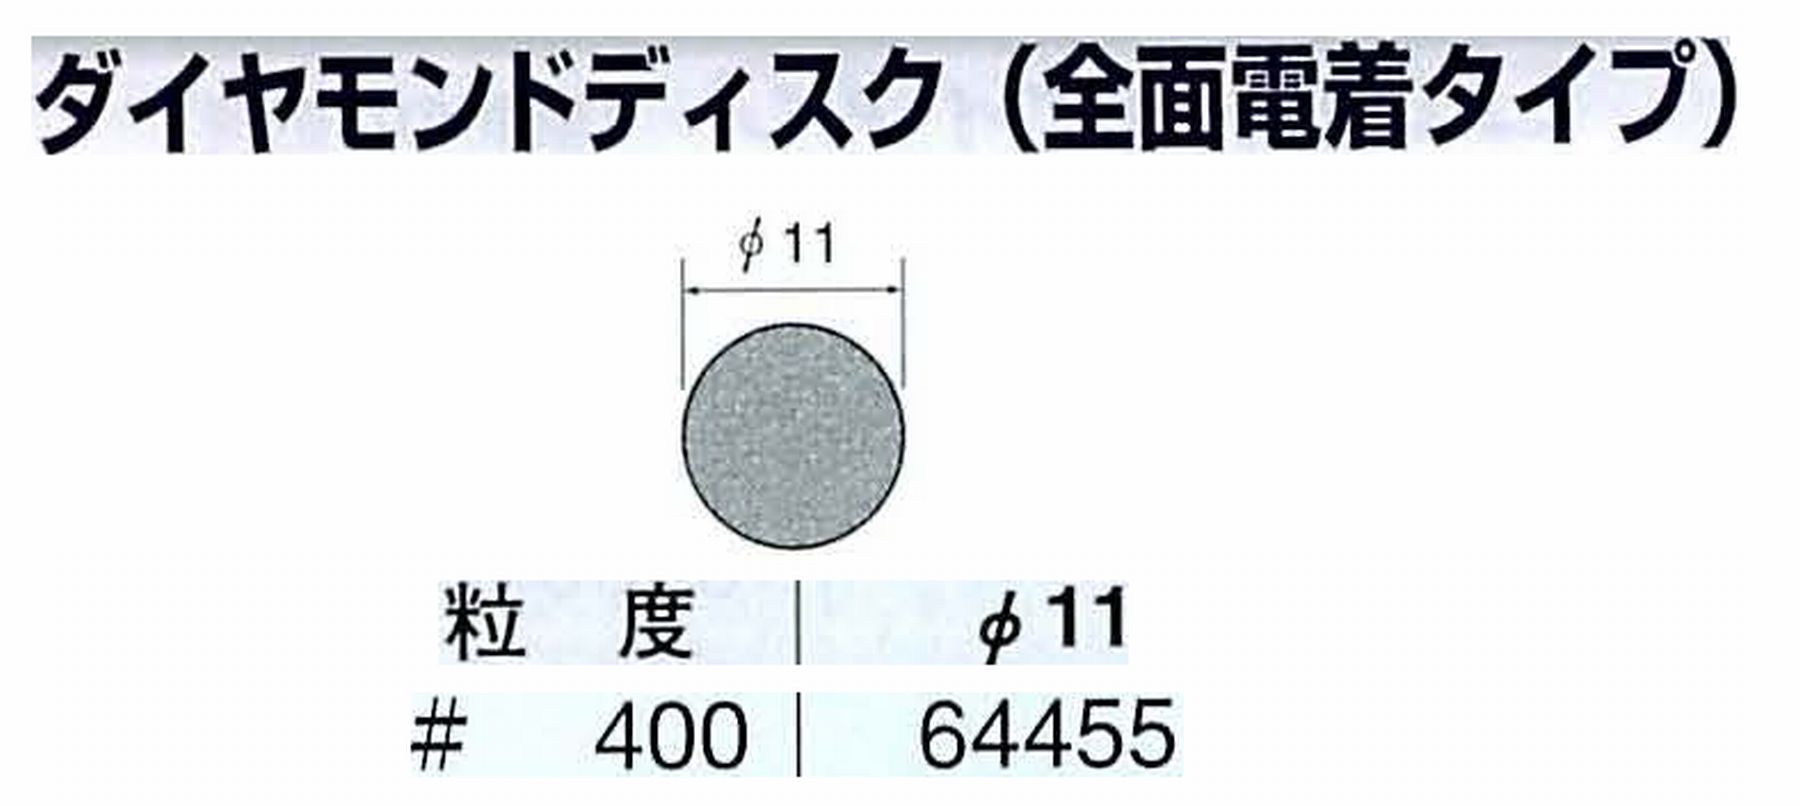 ナカニシ/NAKANISHI アングルグラインダ(電動・エアー) アングルアタッチメント専用工具 ダイヤモンドディスク(全面電着タイプ) 64455